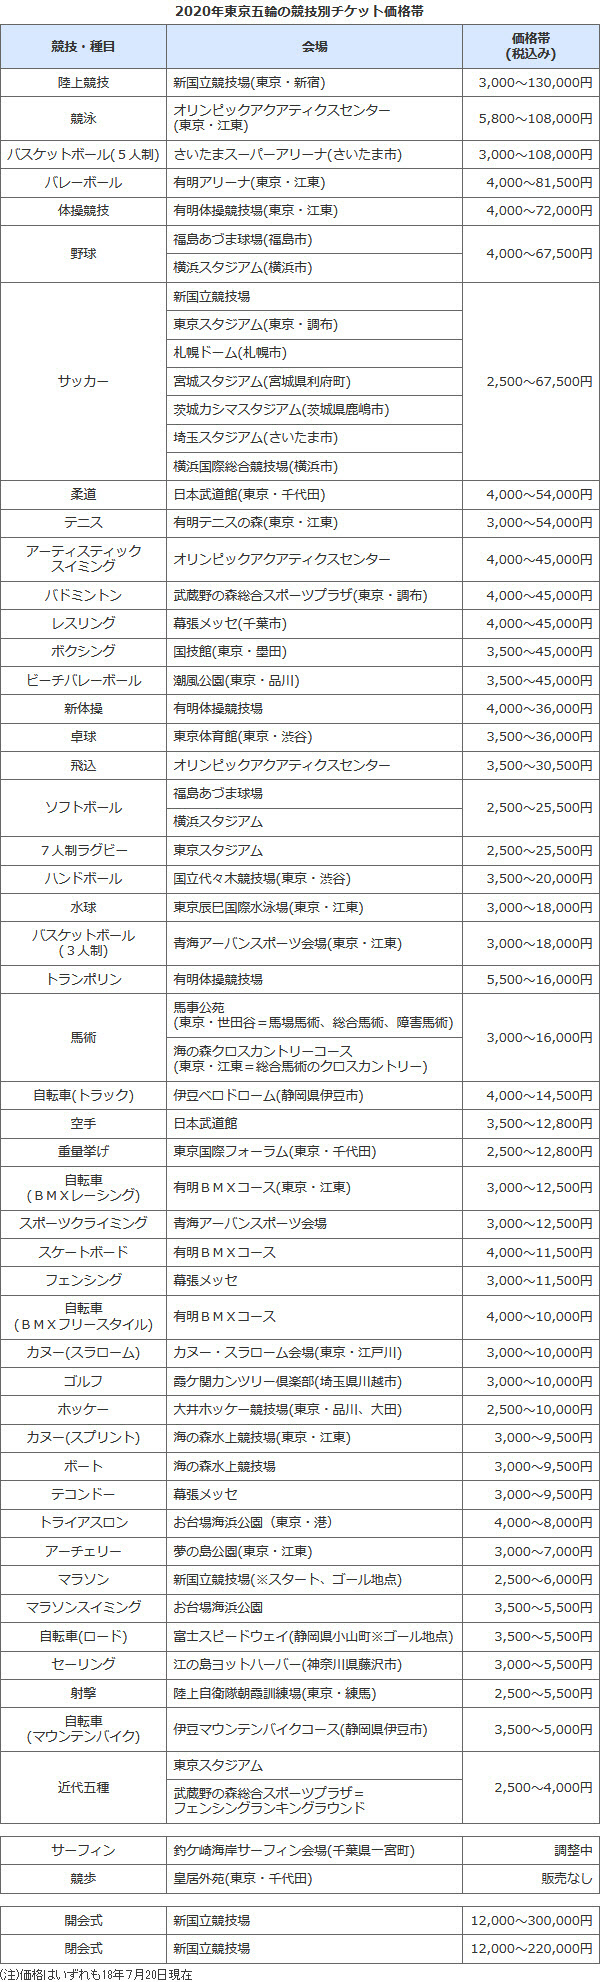 東京五輪チケット 最高は開会式の30万円 日本経済新聞